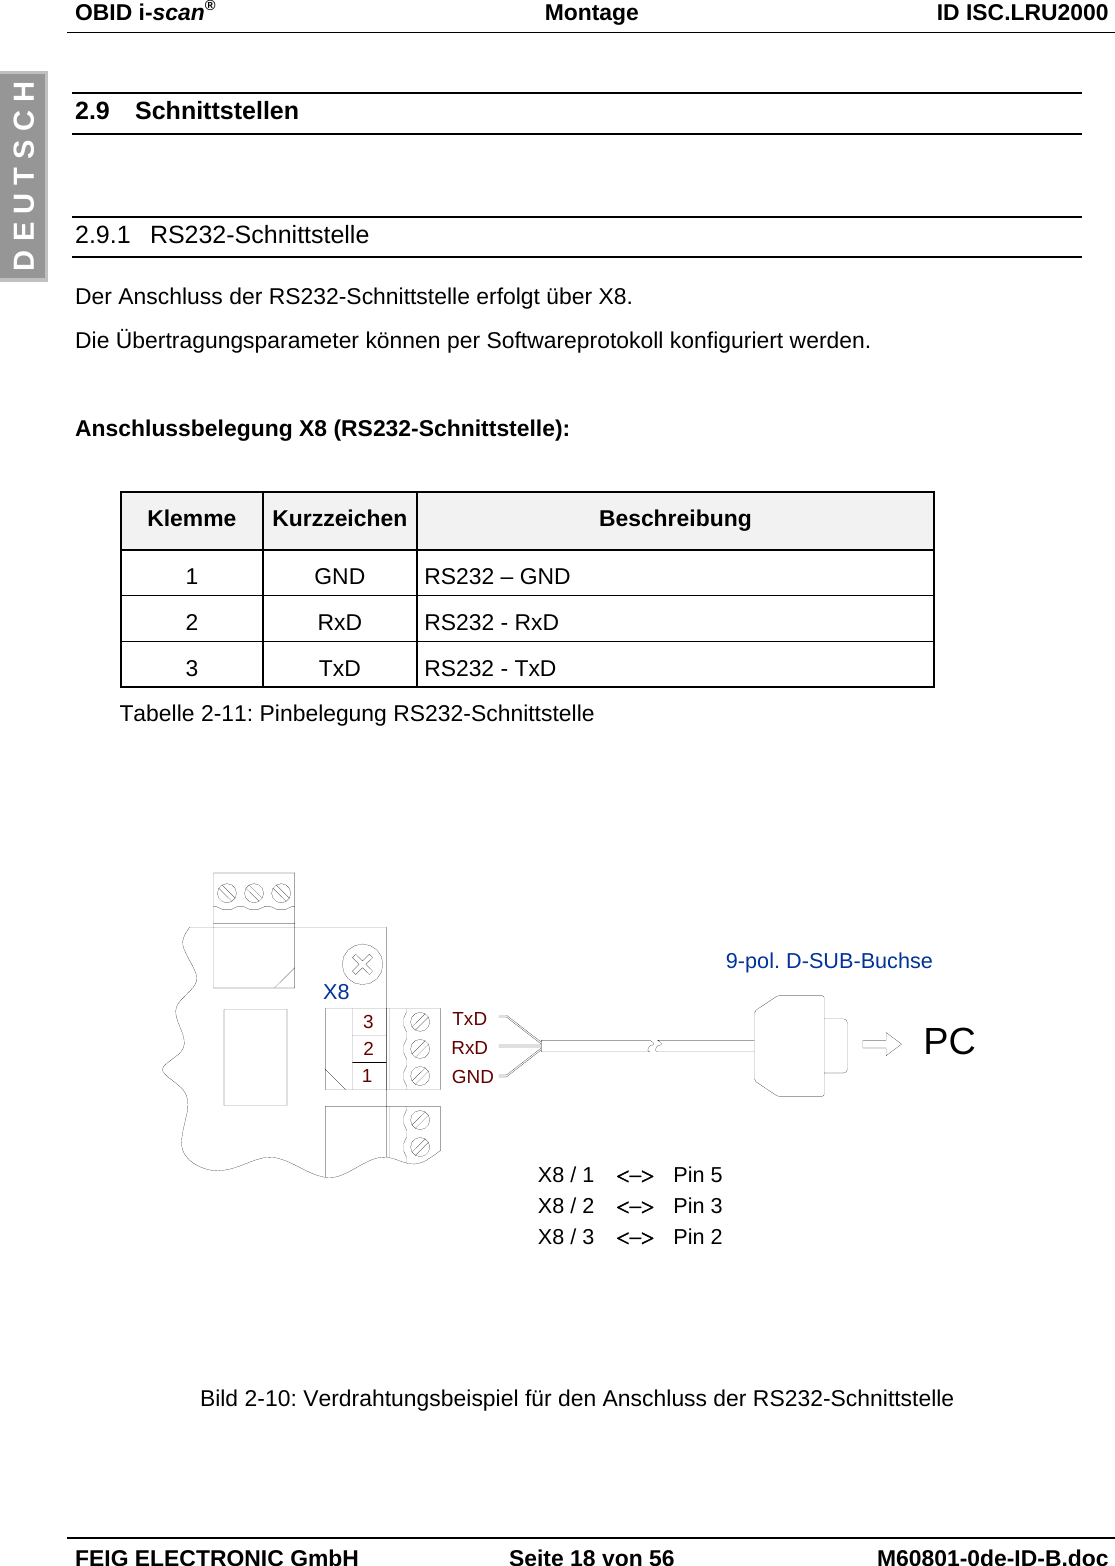 OBID i-scan®Montage ID ISC.LRU2000FEIG ELECTRONIC GmbH Seite 18 von 56 M60801-0de-ID-B.docD E U T S C H2.9 Schnittstellen2.9.1 RS232-SchnittstelleDer Anschluss der RS232-Schnittstelle erfolgt über X8.Die Übertragungsparameter können per Softwareprotokoll konfiguriert werden.Anschlussbelegung X8 (RS232-Schnittstelle):Klemme Kurzzeichen Beschreibung1 GND RS232 – GND2 RxD RS232 - RxD3 TxD RS232 - TxDTabelle 2-11: Pinbelegung RS232-SchnittstellePC&lt;−&gt;&lt;−&gt;&lt;−&gt;X8 / 3 Pin 2X8 / 2 Pin 3X8 / 1 Pin 59-pol. D-SUB-BuchseX8TxDRxDGND321Bild 2-10: Verdrahtungsbeispiel für den Anschluss der RS232-Schnittstelle